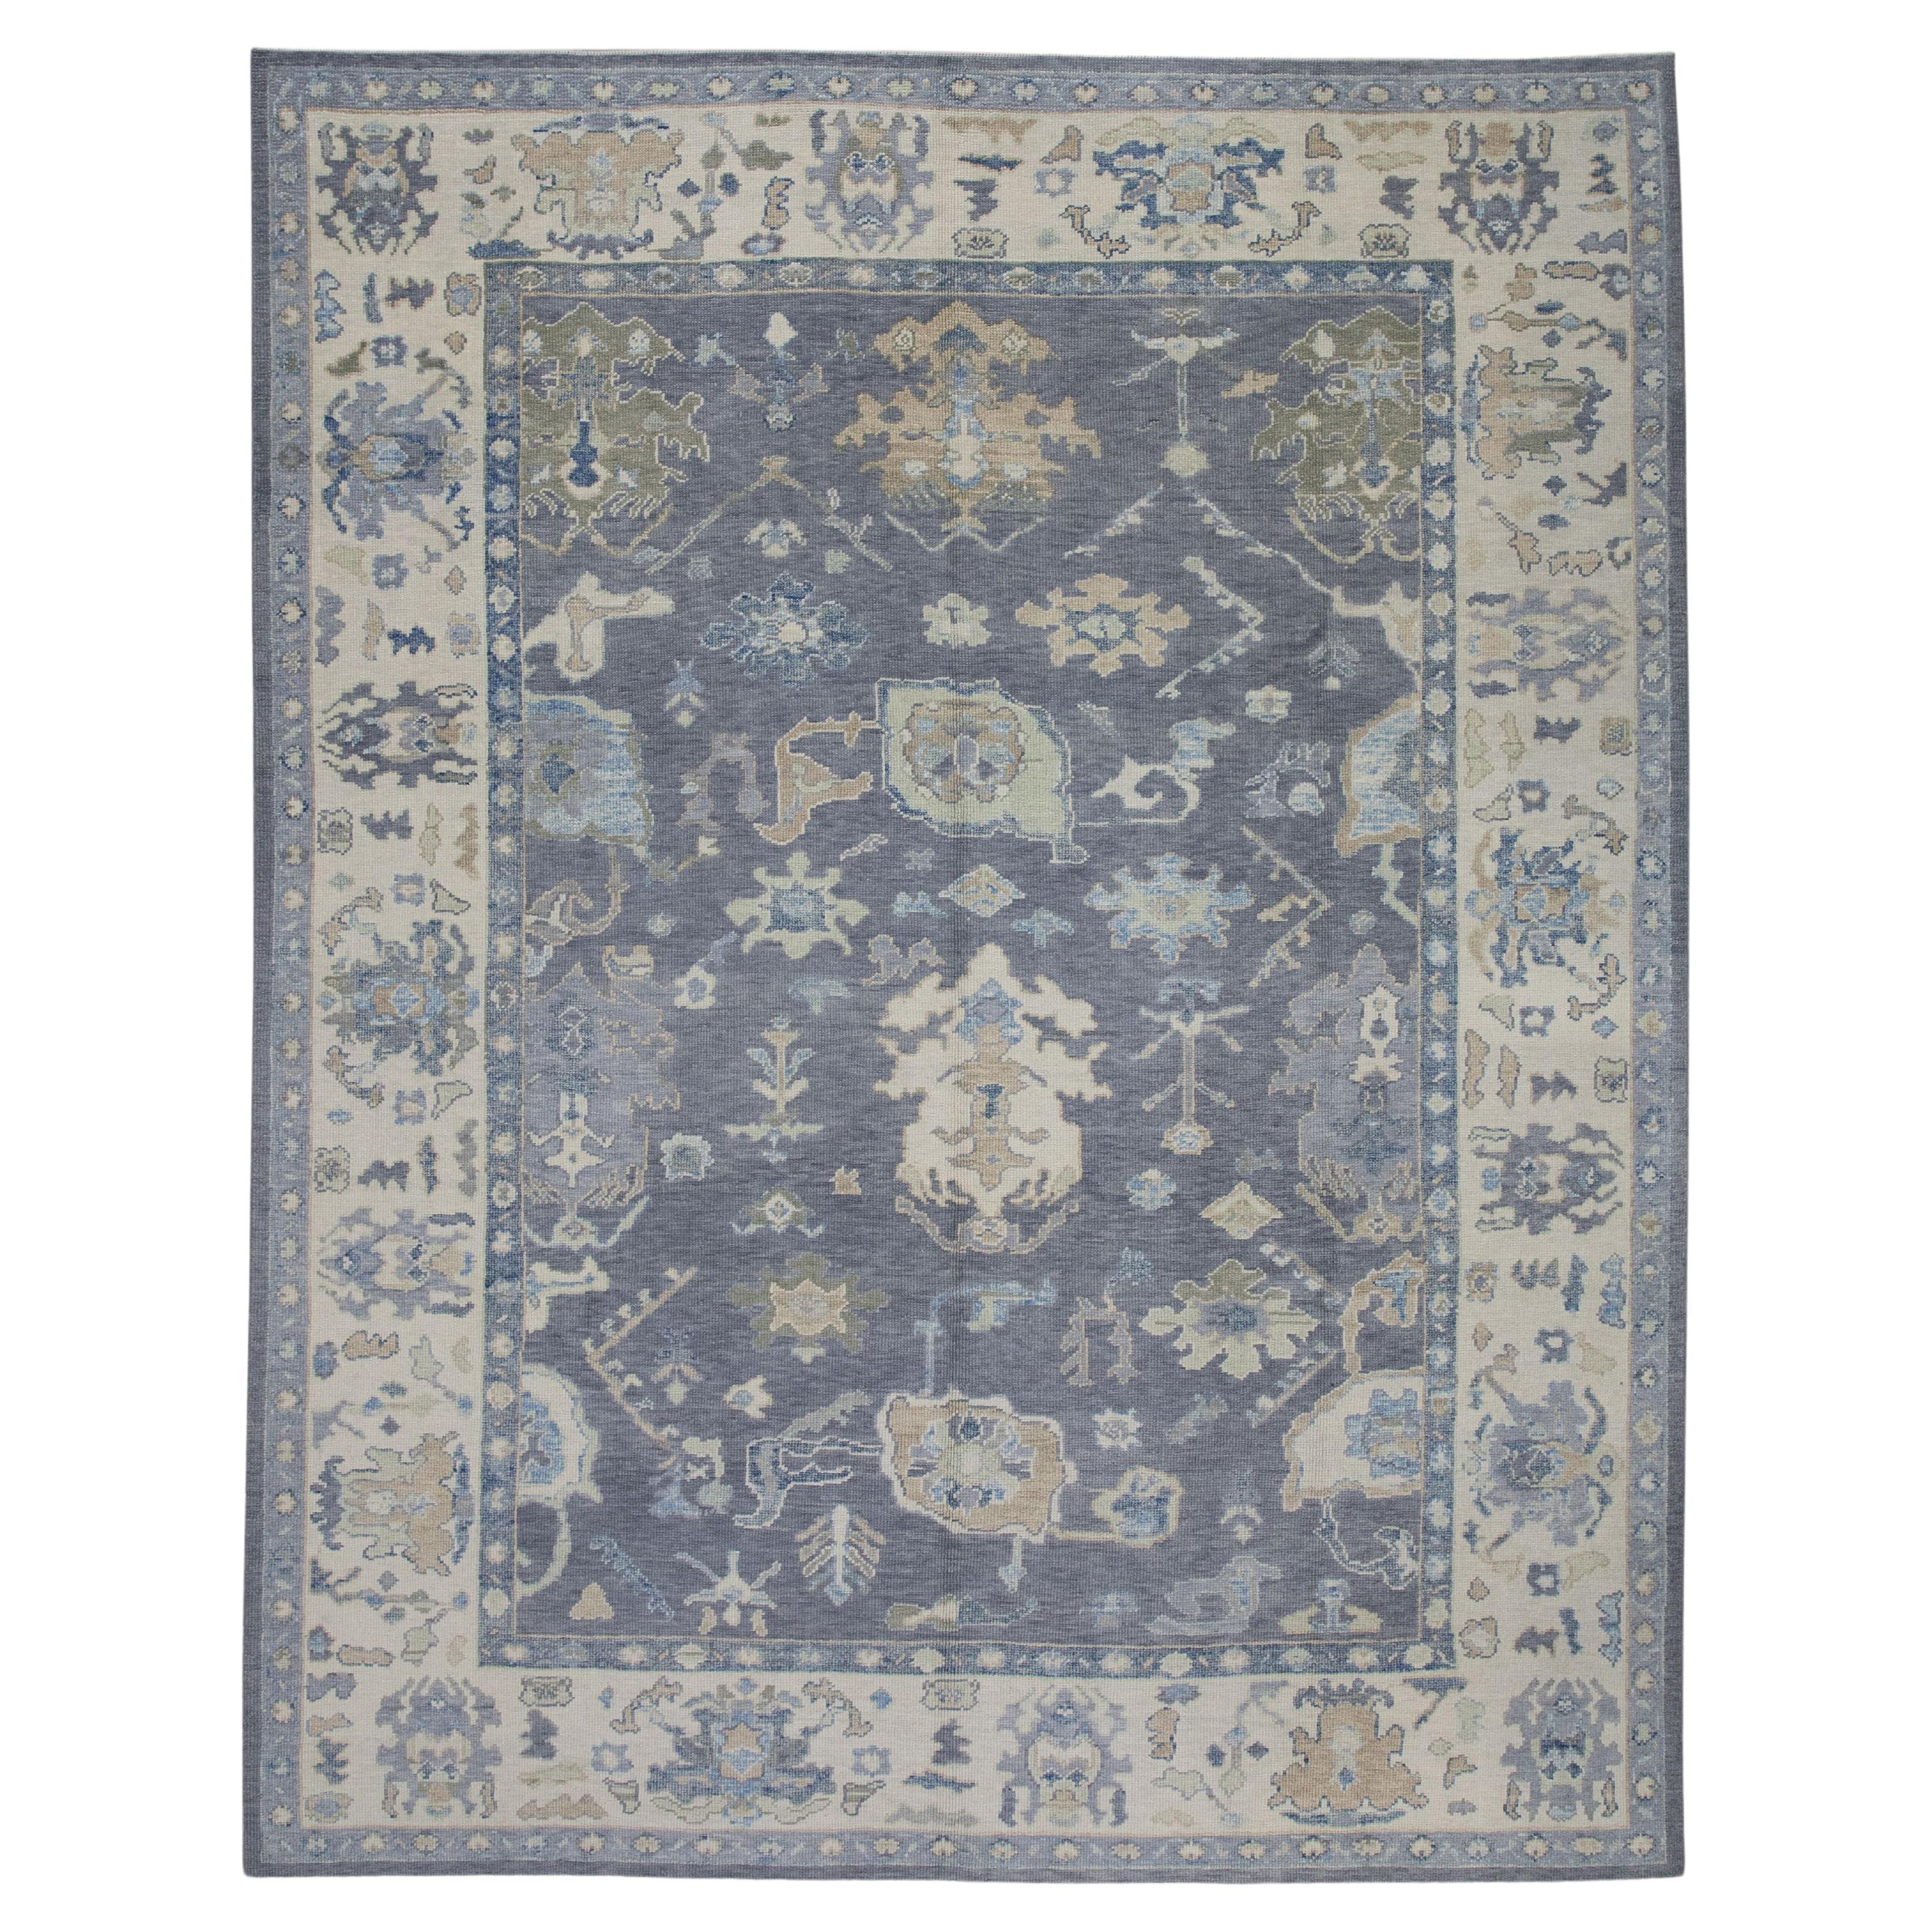 Handgewebter türkischer Oushak-Teppich aus Wolle in Grau & Blau mit Blumenmuster 8'9" X 11'5"